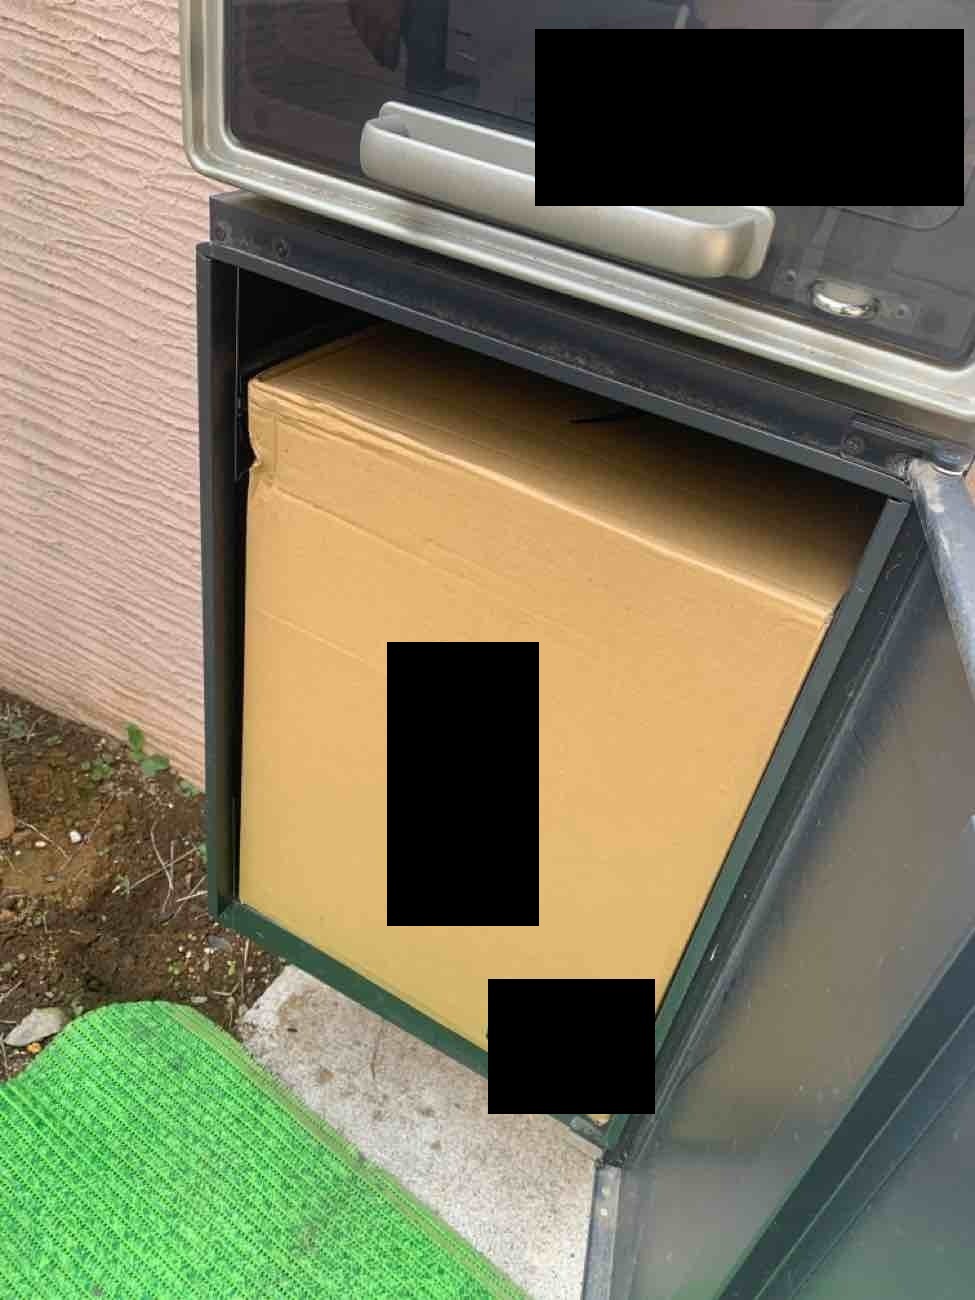 【埼玉県吉川市】S様邸宅配BOX修繕工事が完了しました。 画像